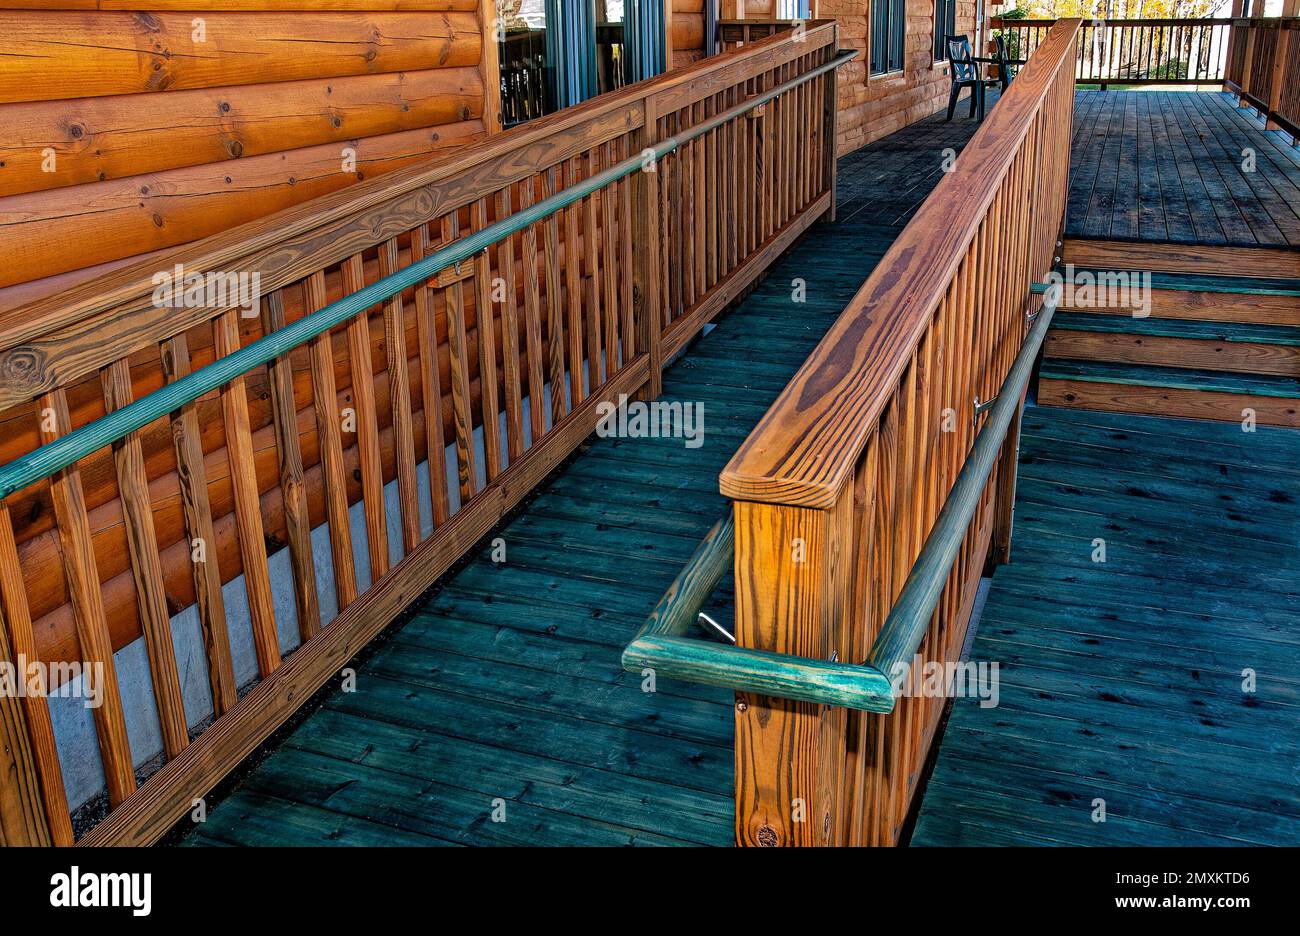 Bâtiment en bois avec rampe d'accès en bois pour personnes handicapées Banque D'Images